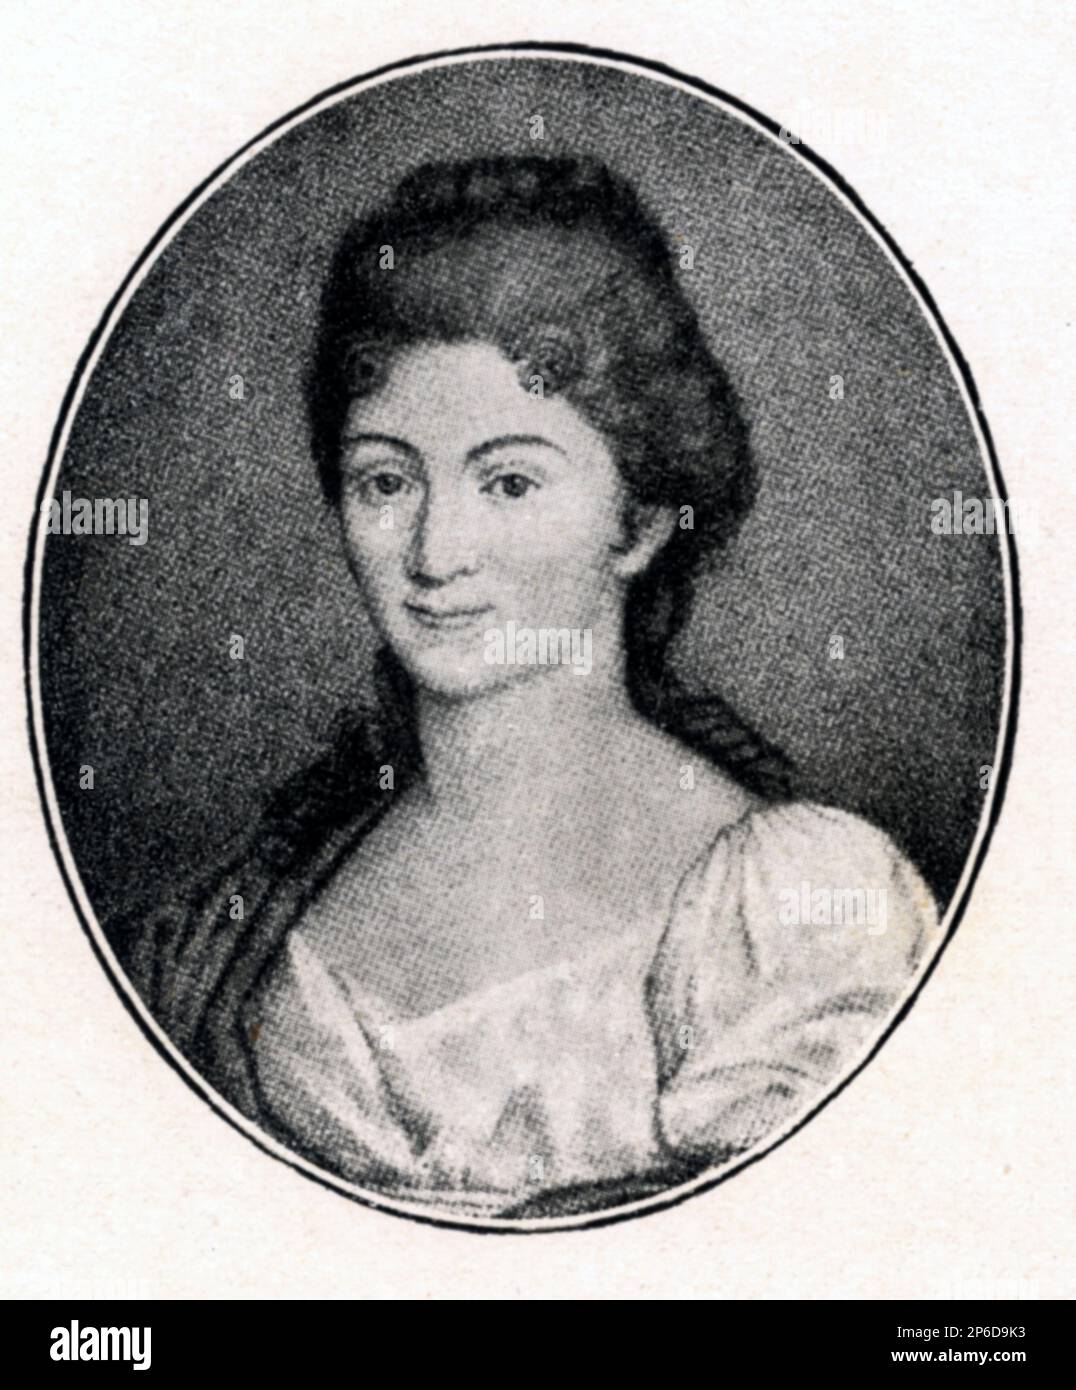 La femme arcadienne poète et écrivain comtesse PAOLINA SECCO SUARDO GRISMONDI ( 1746 - 1801 ) surnommé LESBIA CIMONIA . Marié au comte Luigi GRISMONDI en 1764 . Ami d'IPPOLITO PINDEMONTE et de l'Accademia degli Eccitati ( Affidati ), également ami du célèbre architecte néoclassique Giacomo Quarenghi et du scientifique Lorenzo Mascheroni . Paolina était l'ancêtre de Donna CLAUDIA ANTONA-TRAVERSI ( né GRISMONDI ) marié avec le politicien italien Avvocato Onorevole GIOVANNI ANTONA TRAVERSI . - LETTERATURA - LITTÉRATURE - POETESSA - POÈTE - POETA - POÉSIE - POÉSIE - ÉCRIVAIN - SCRITTRICE - SCRITTOR Banque D'Images